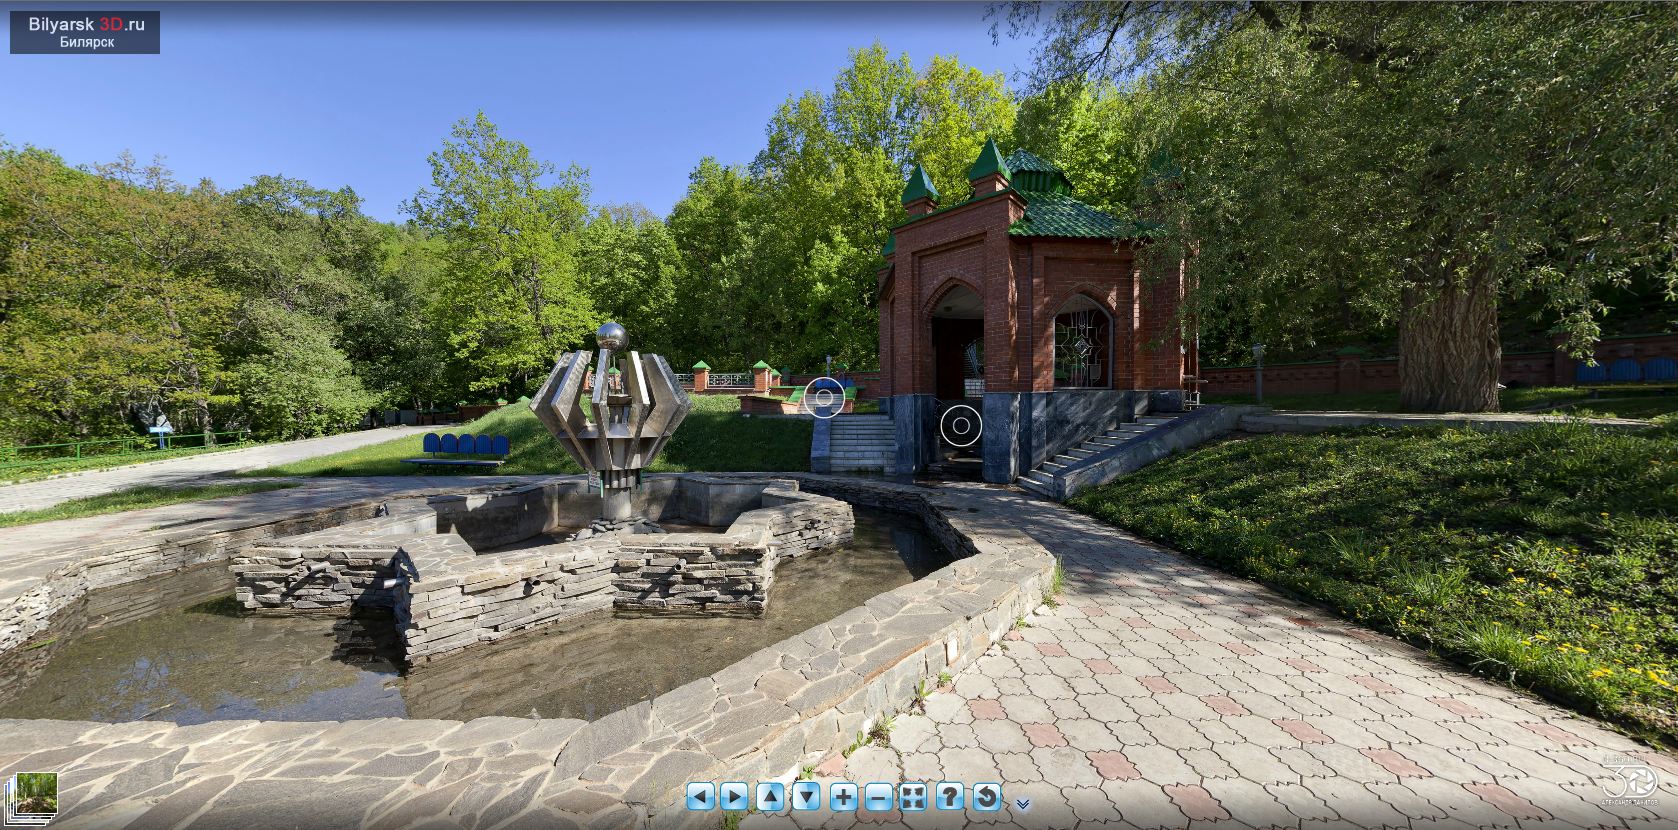 Виртуальный тур по Билярскому святому источнику